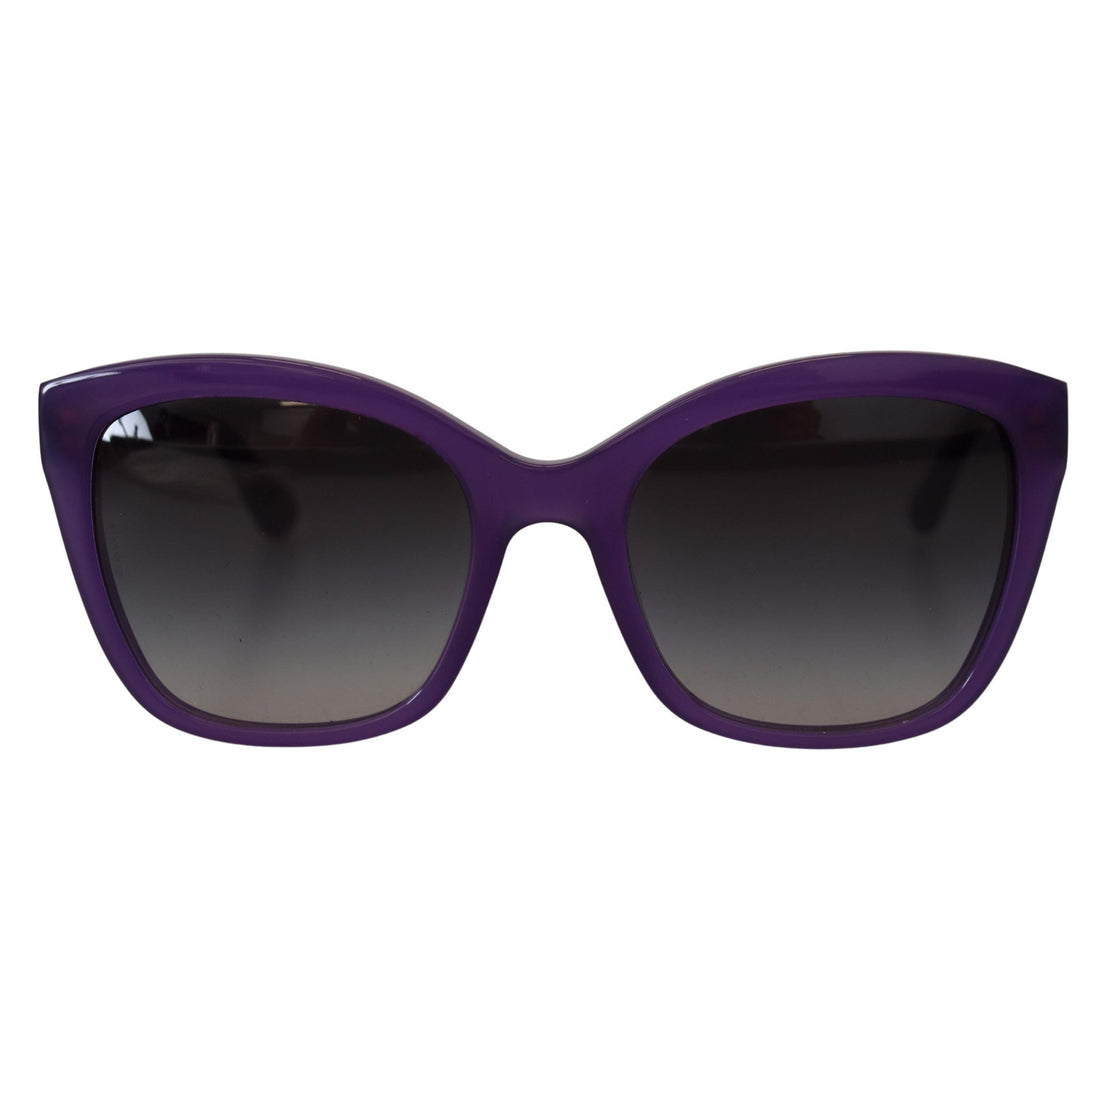 Dolce & Gabbana Purple Acetate Square Full Rim DG4240 Sunglasses